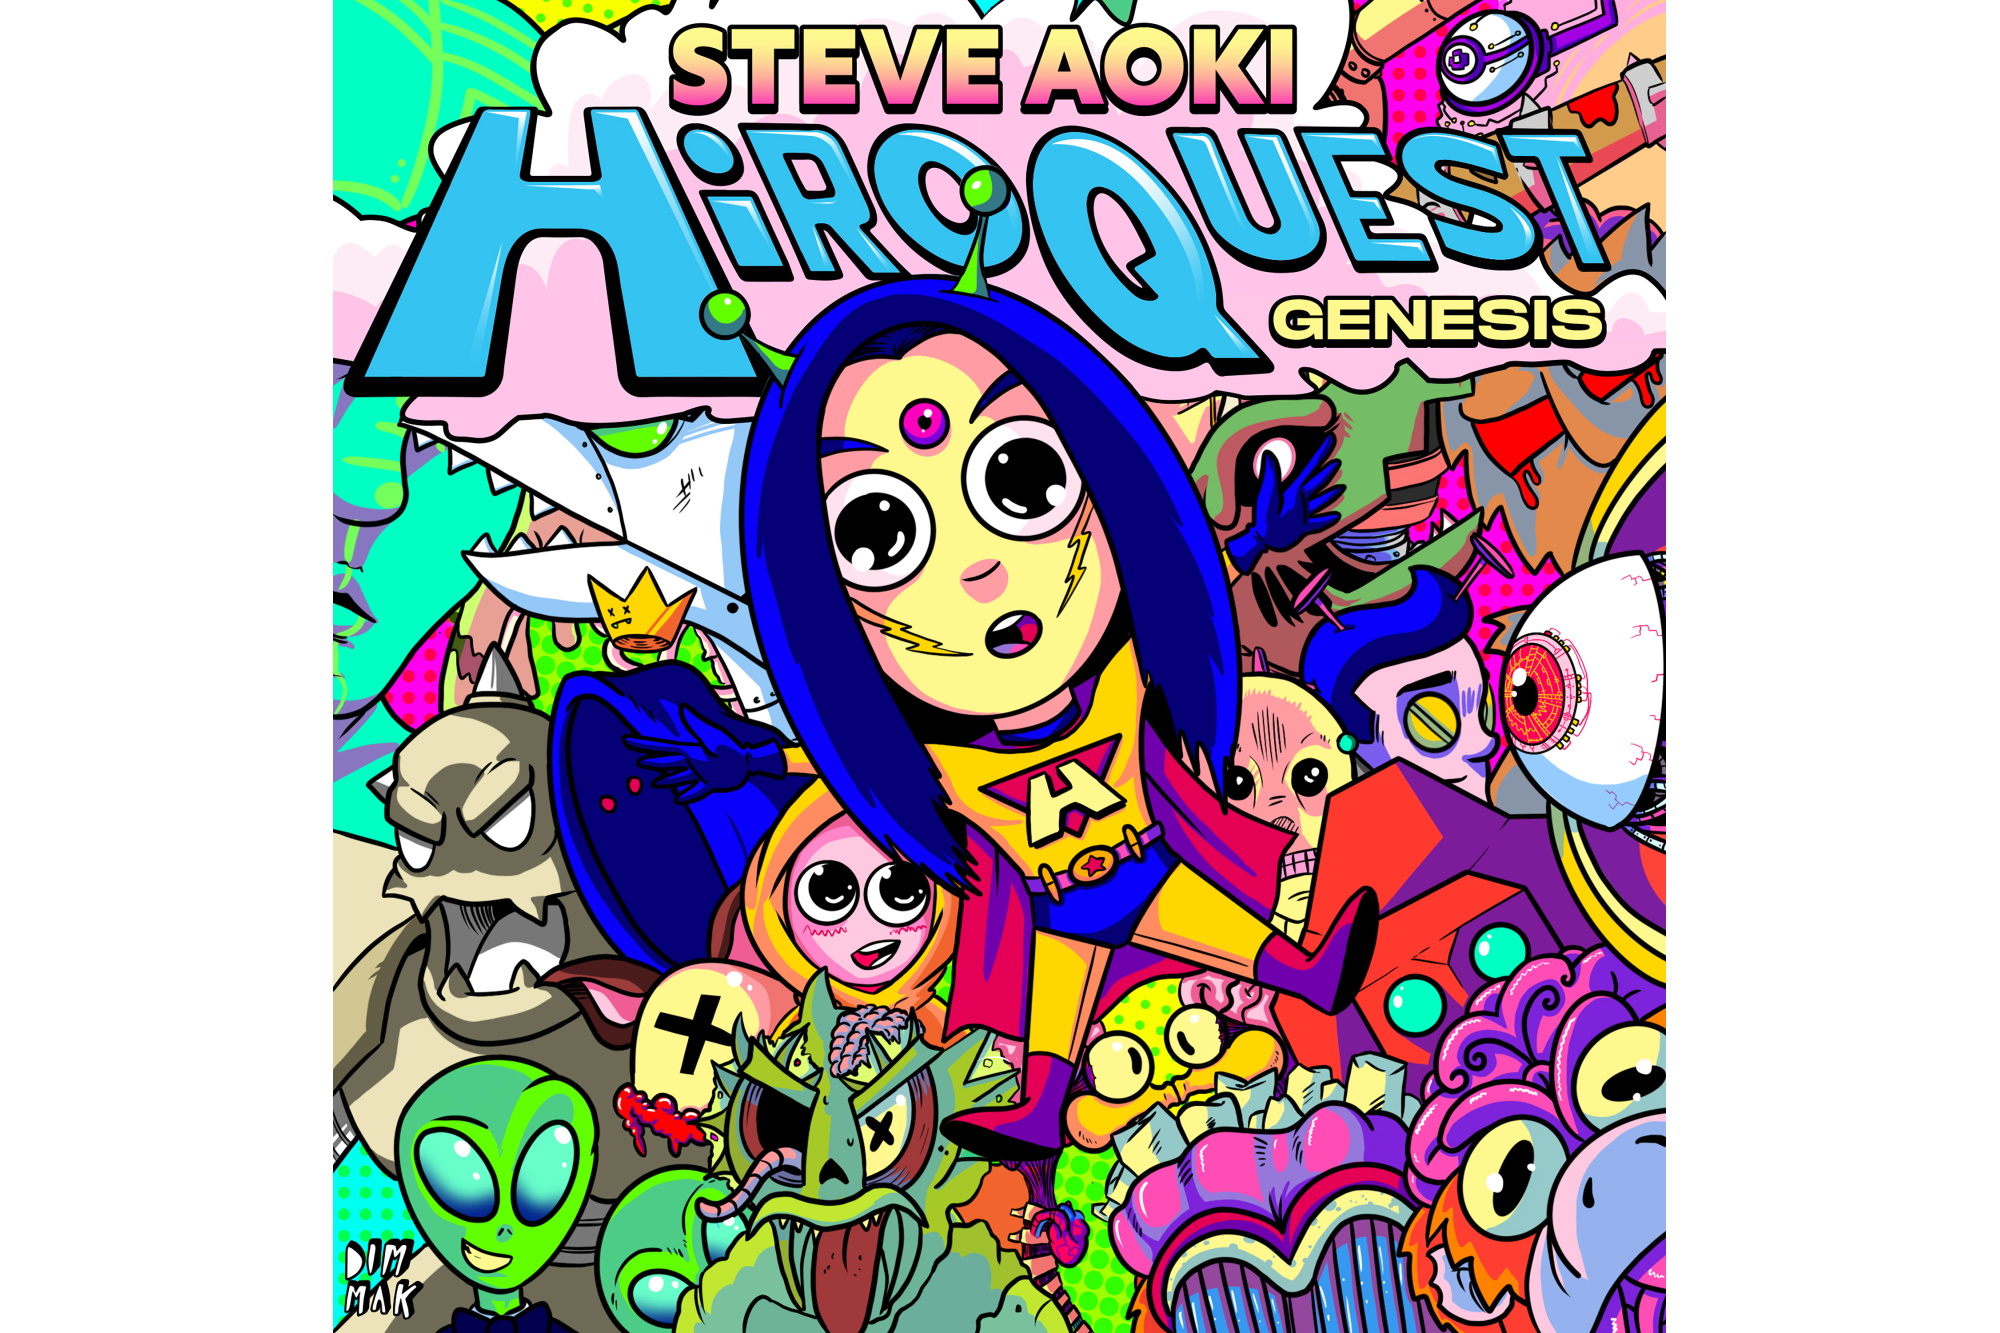 Steve Aoki - HiROQUEST Genesis